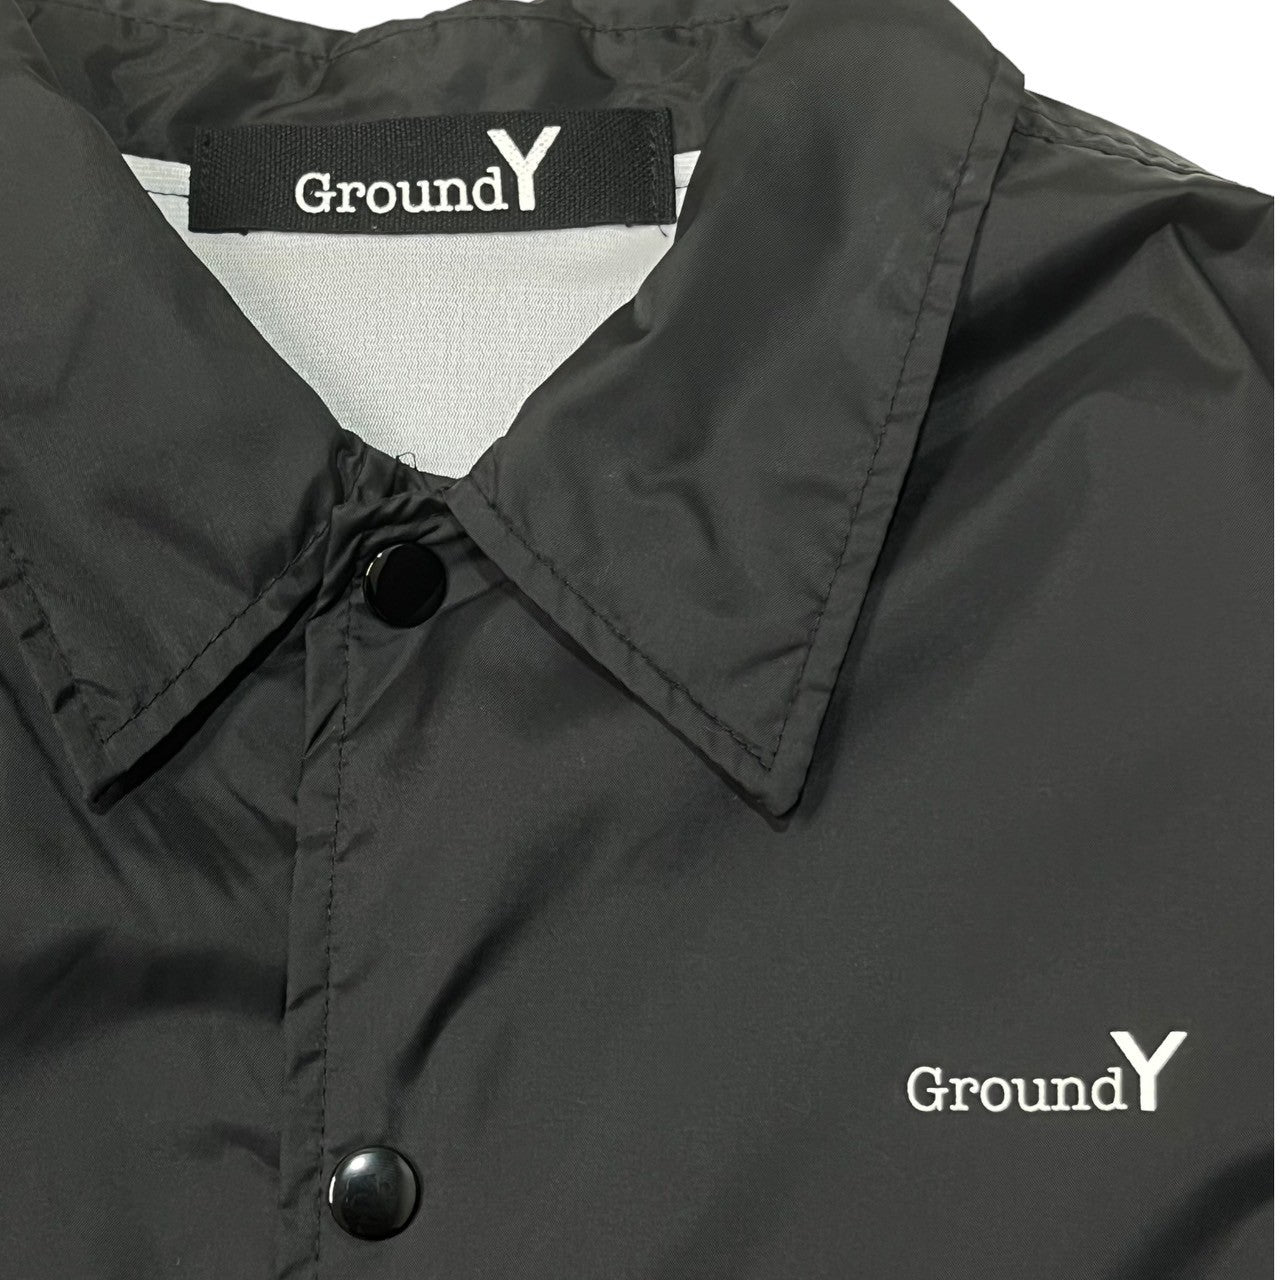 Ground Y(グラウンドワイ) Veste COACH "Y" GRAPHIC NYLON TAFFETA JACKET Yグラフィック コーチジャケット GA-J54-600 SIZE 3(L) ブラック×ホワイト